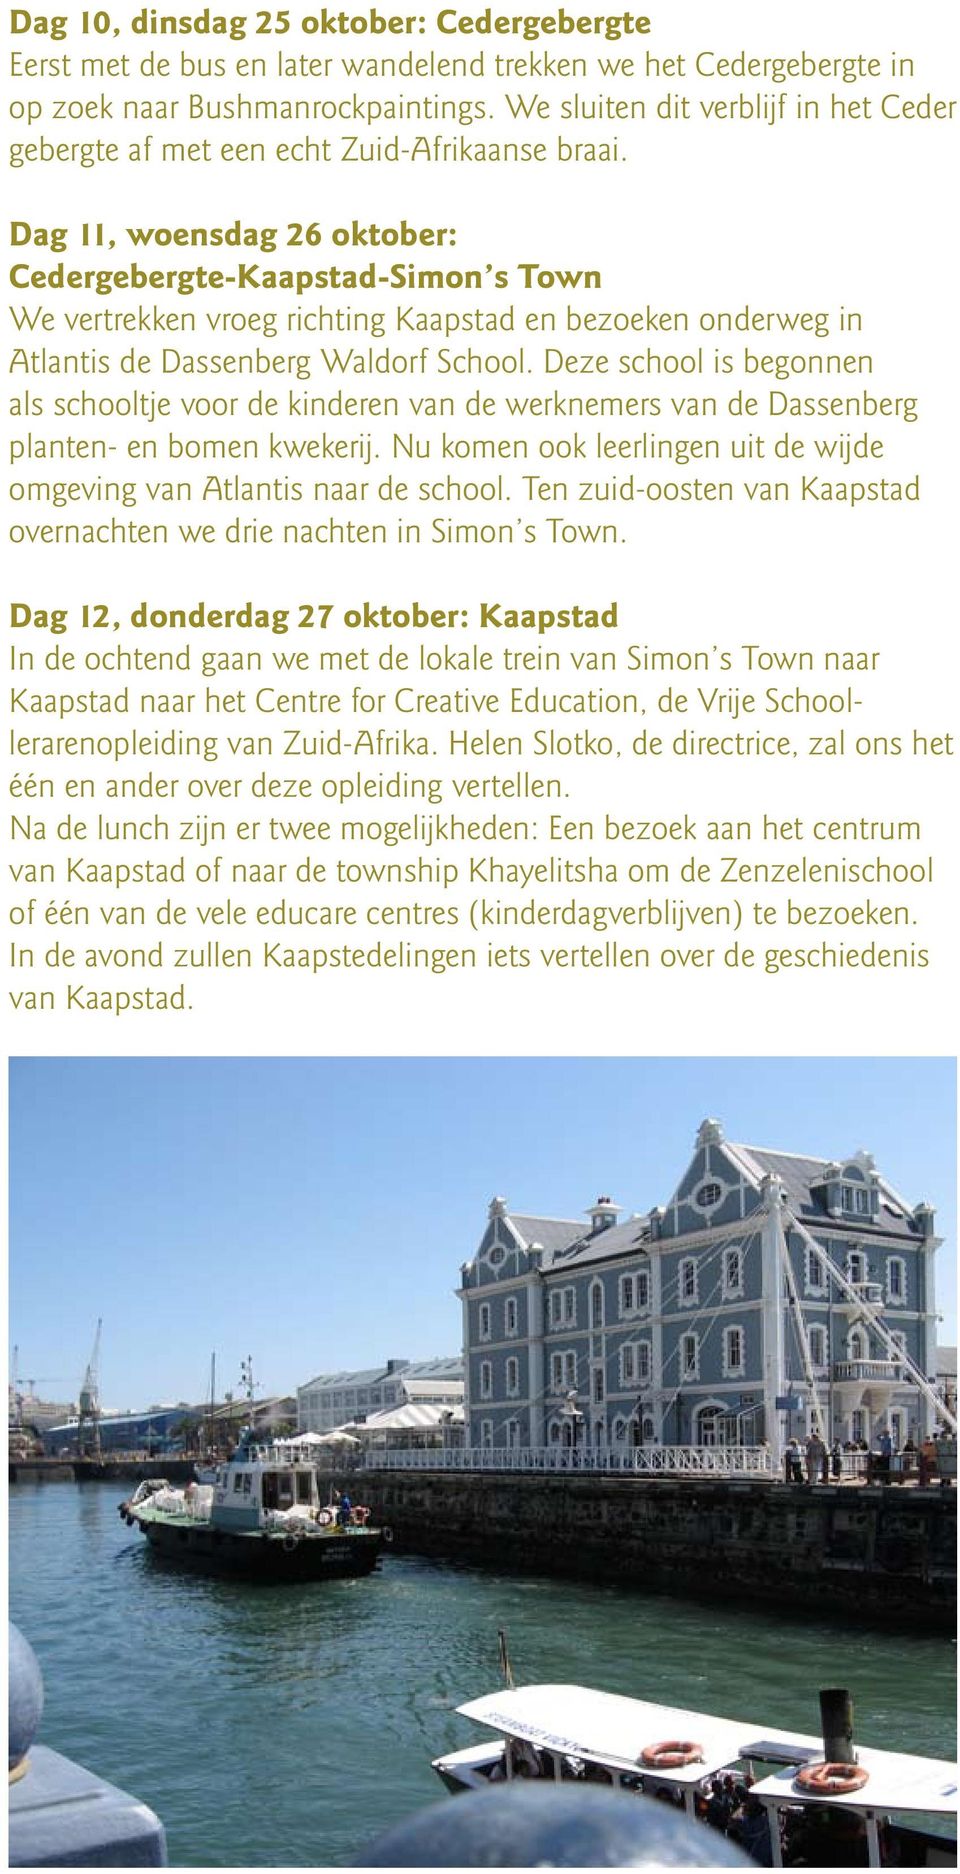 Dag 11, woensdag 26 oktober: Cedergebergte-Kaapstad-Simon s Town We vertrekken vroeg richting Kaapstad en bezoeken onderweg in Atlantis de Dassenberg Waldorf School.